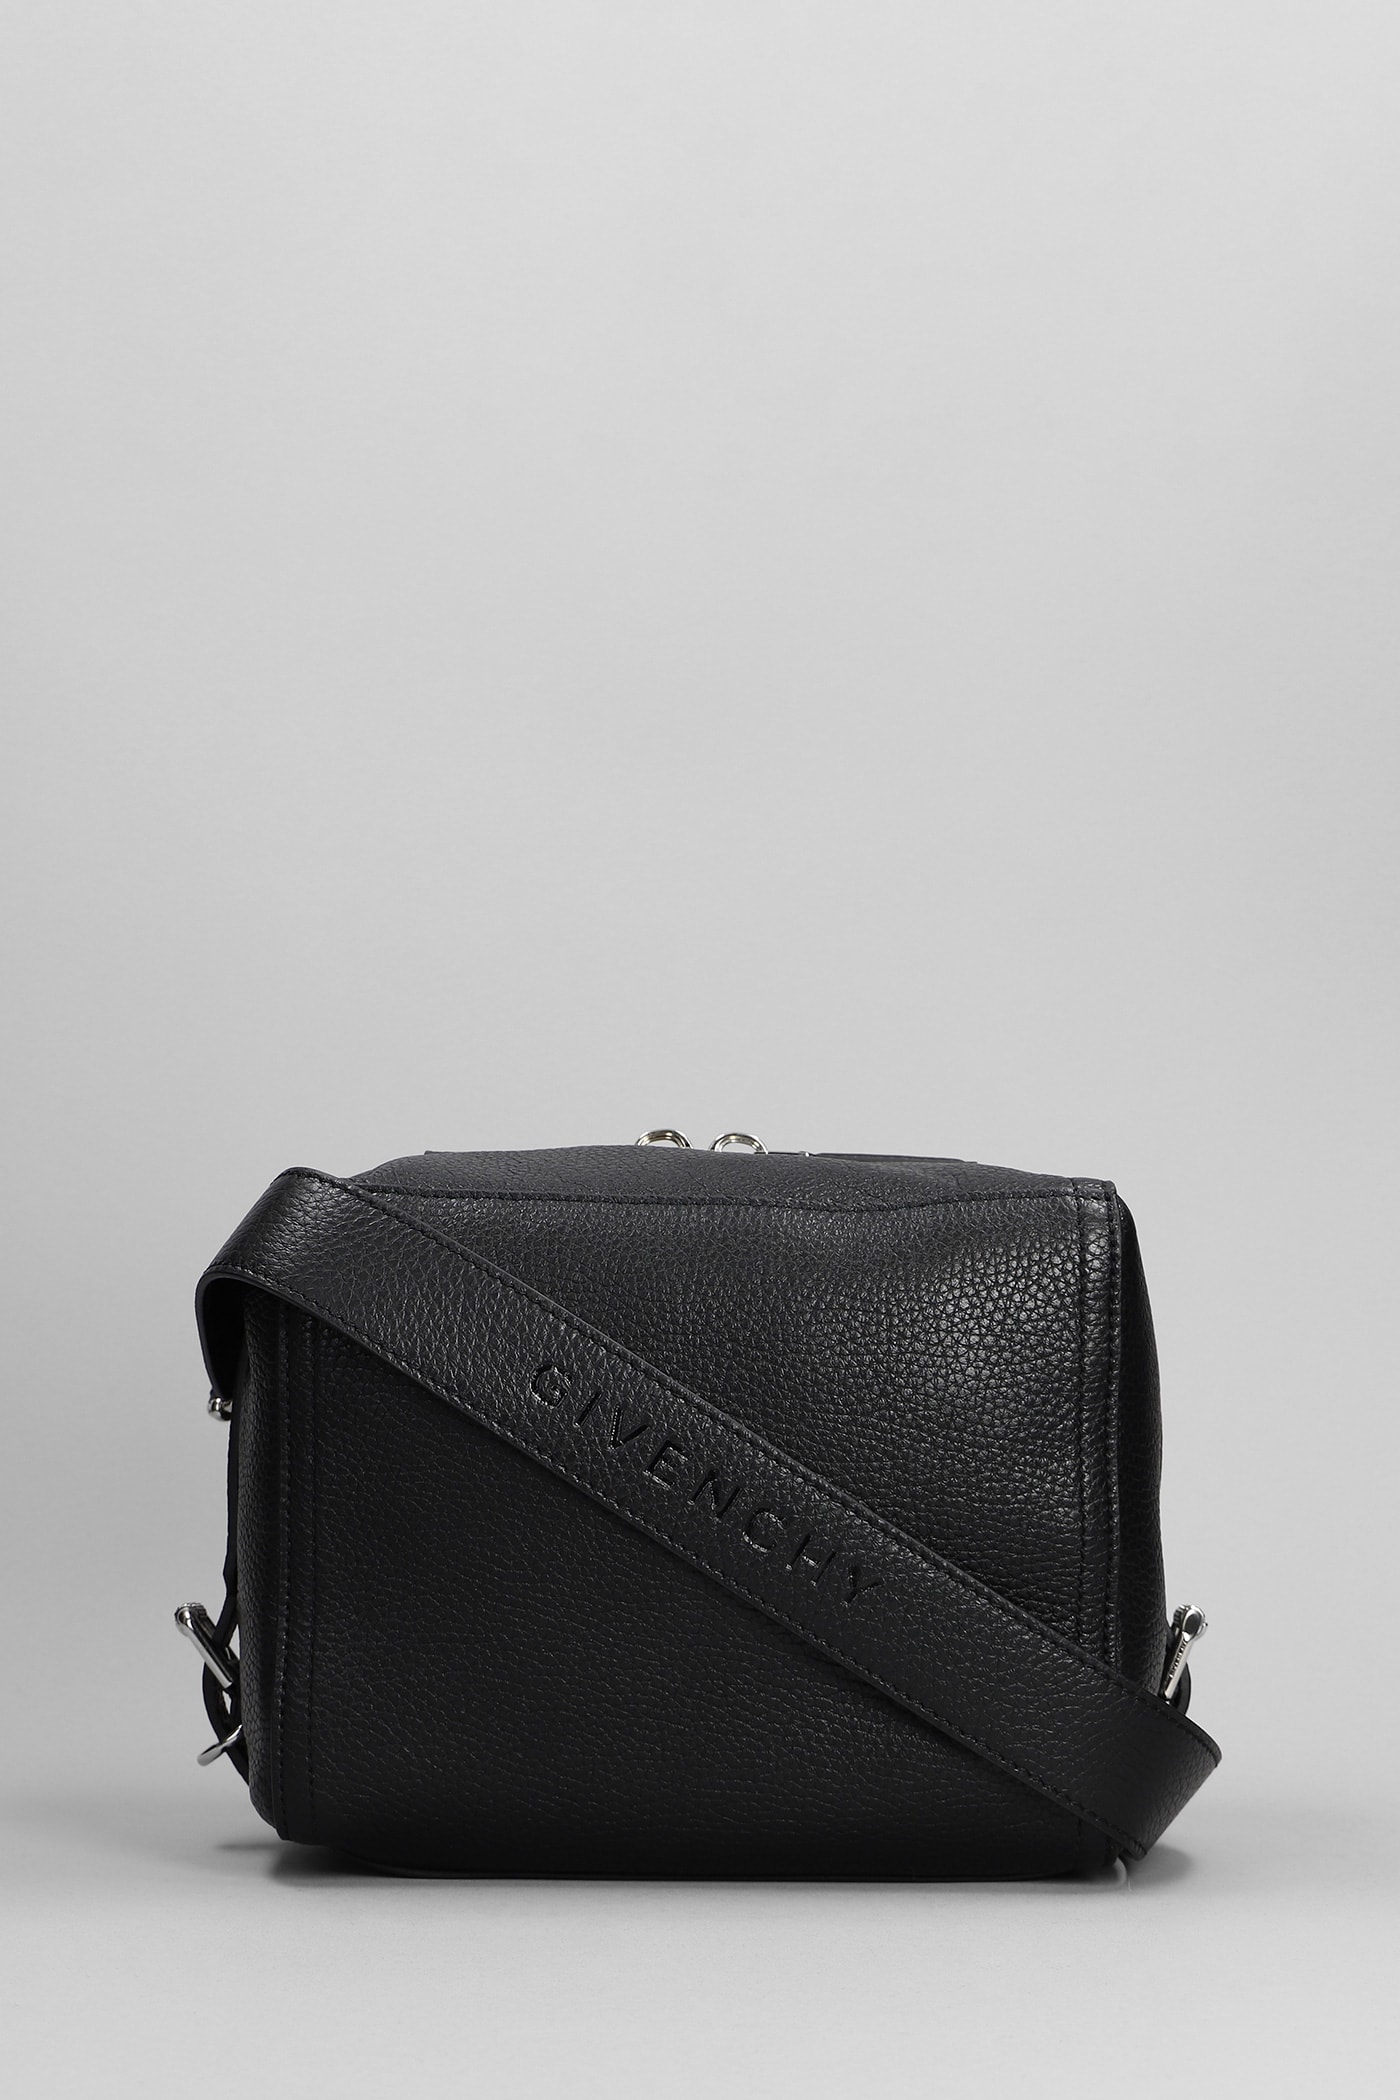 Givenchy Pandora Small Bag Shoulder Bag In Black Leather